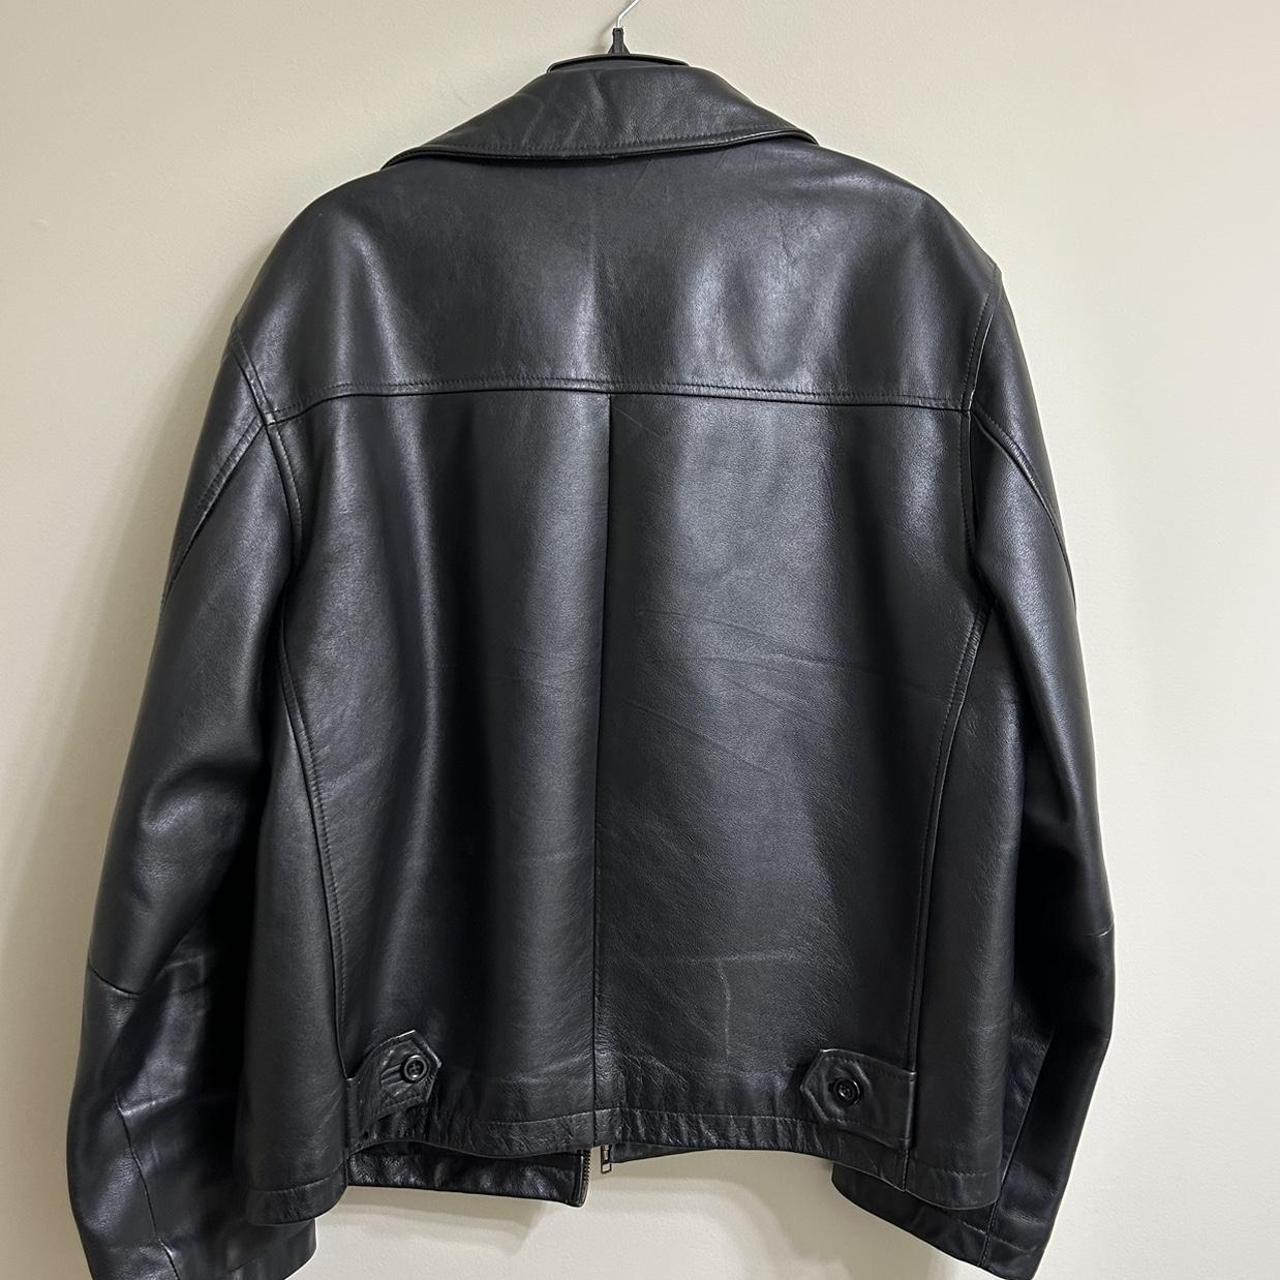 All American Black Leather Jacket. heavy duty jacket... - Depop